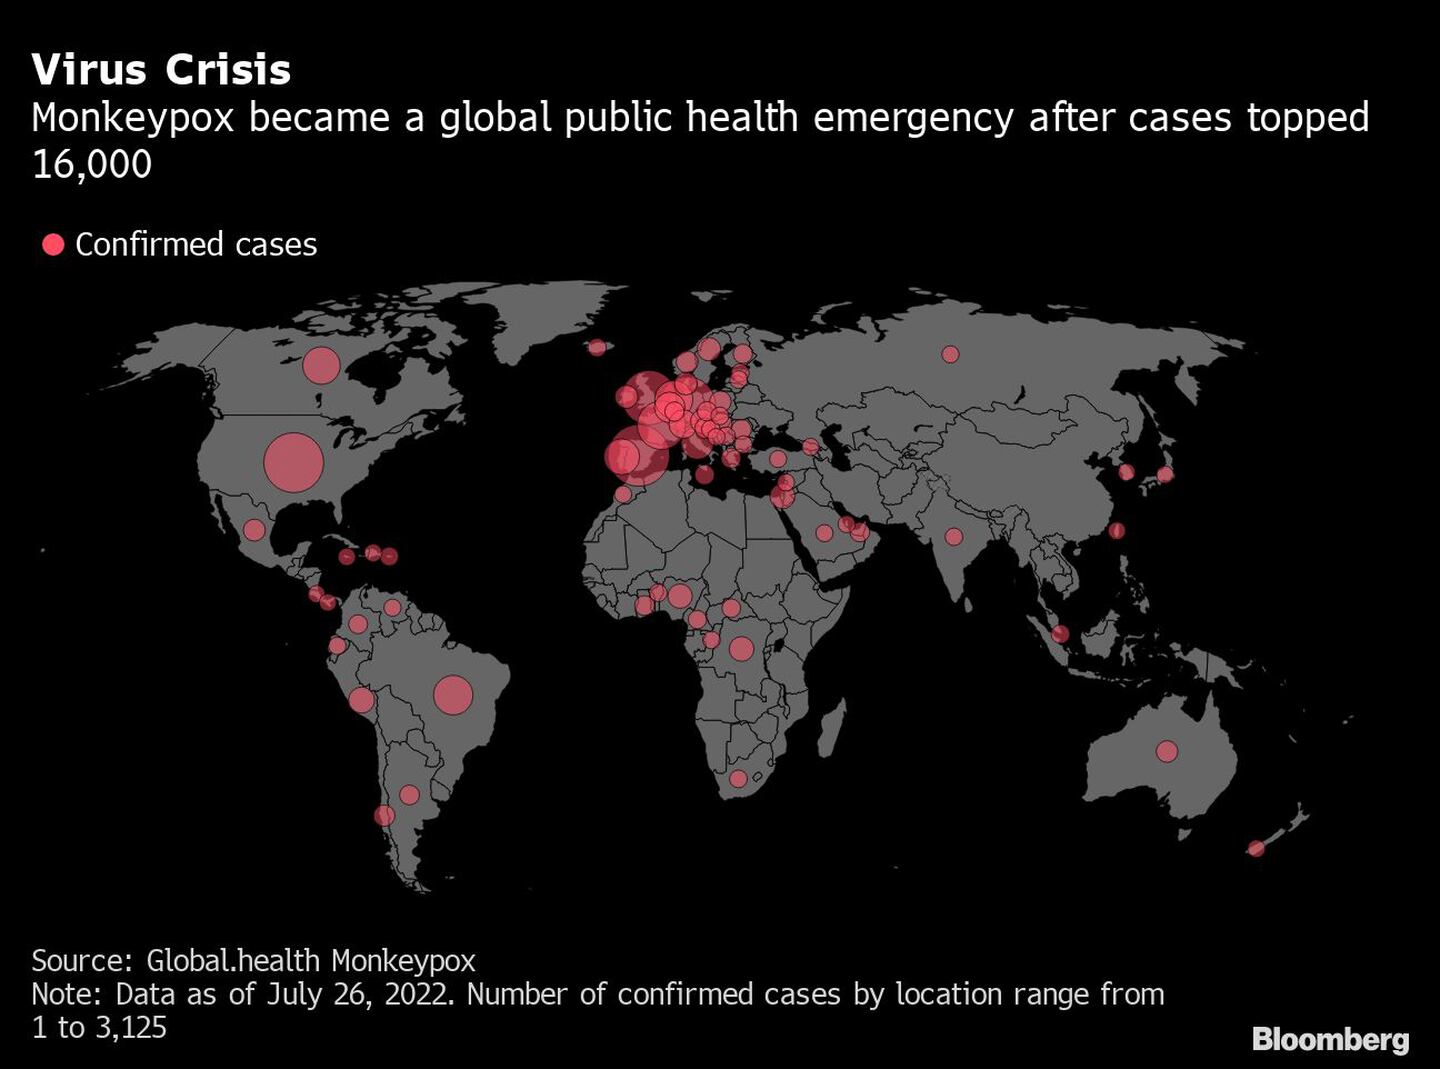 La viruela del mono se volvió una emergencía de salud pública global luego de que se superaran los 16.000 casosdfd